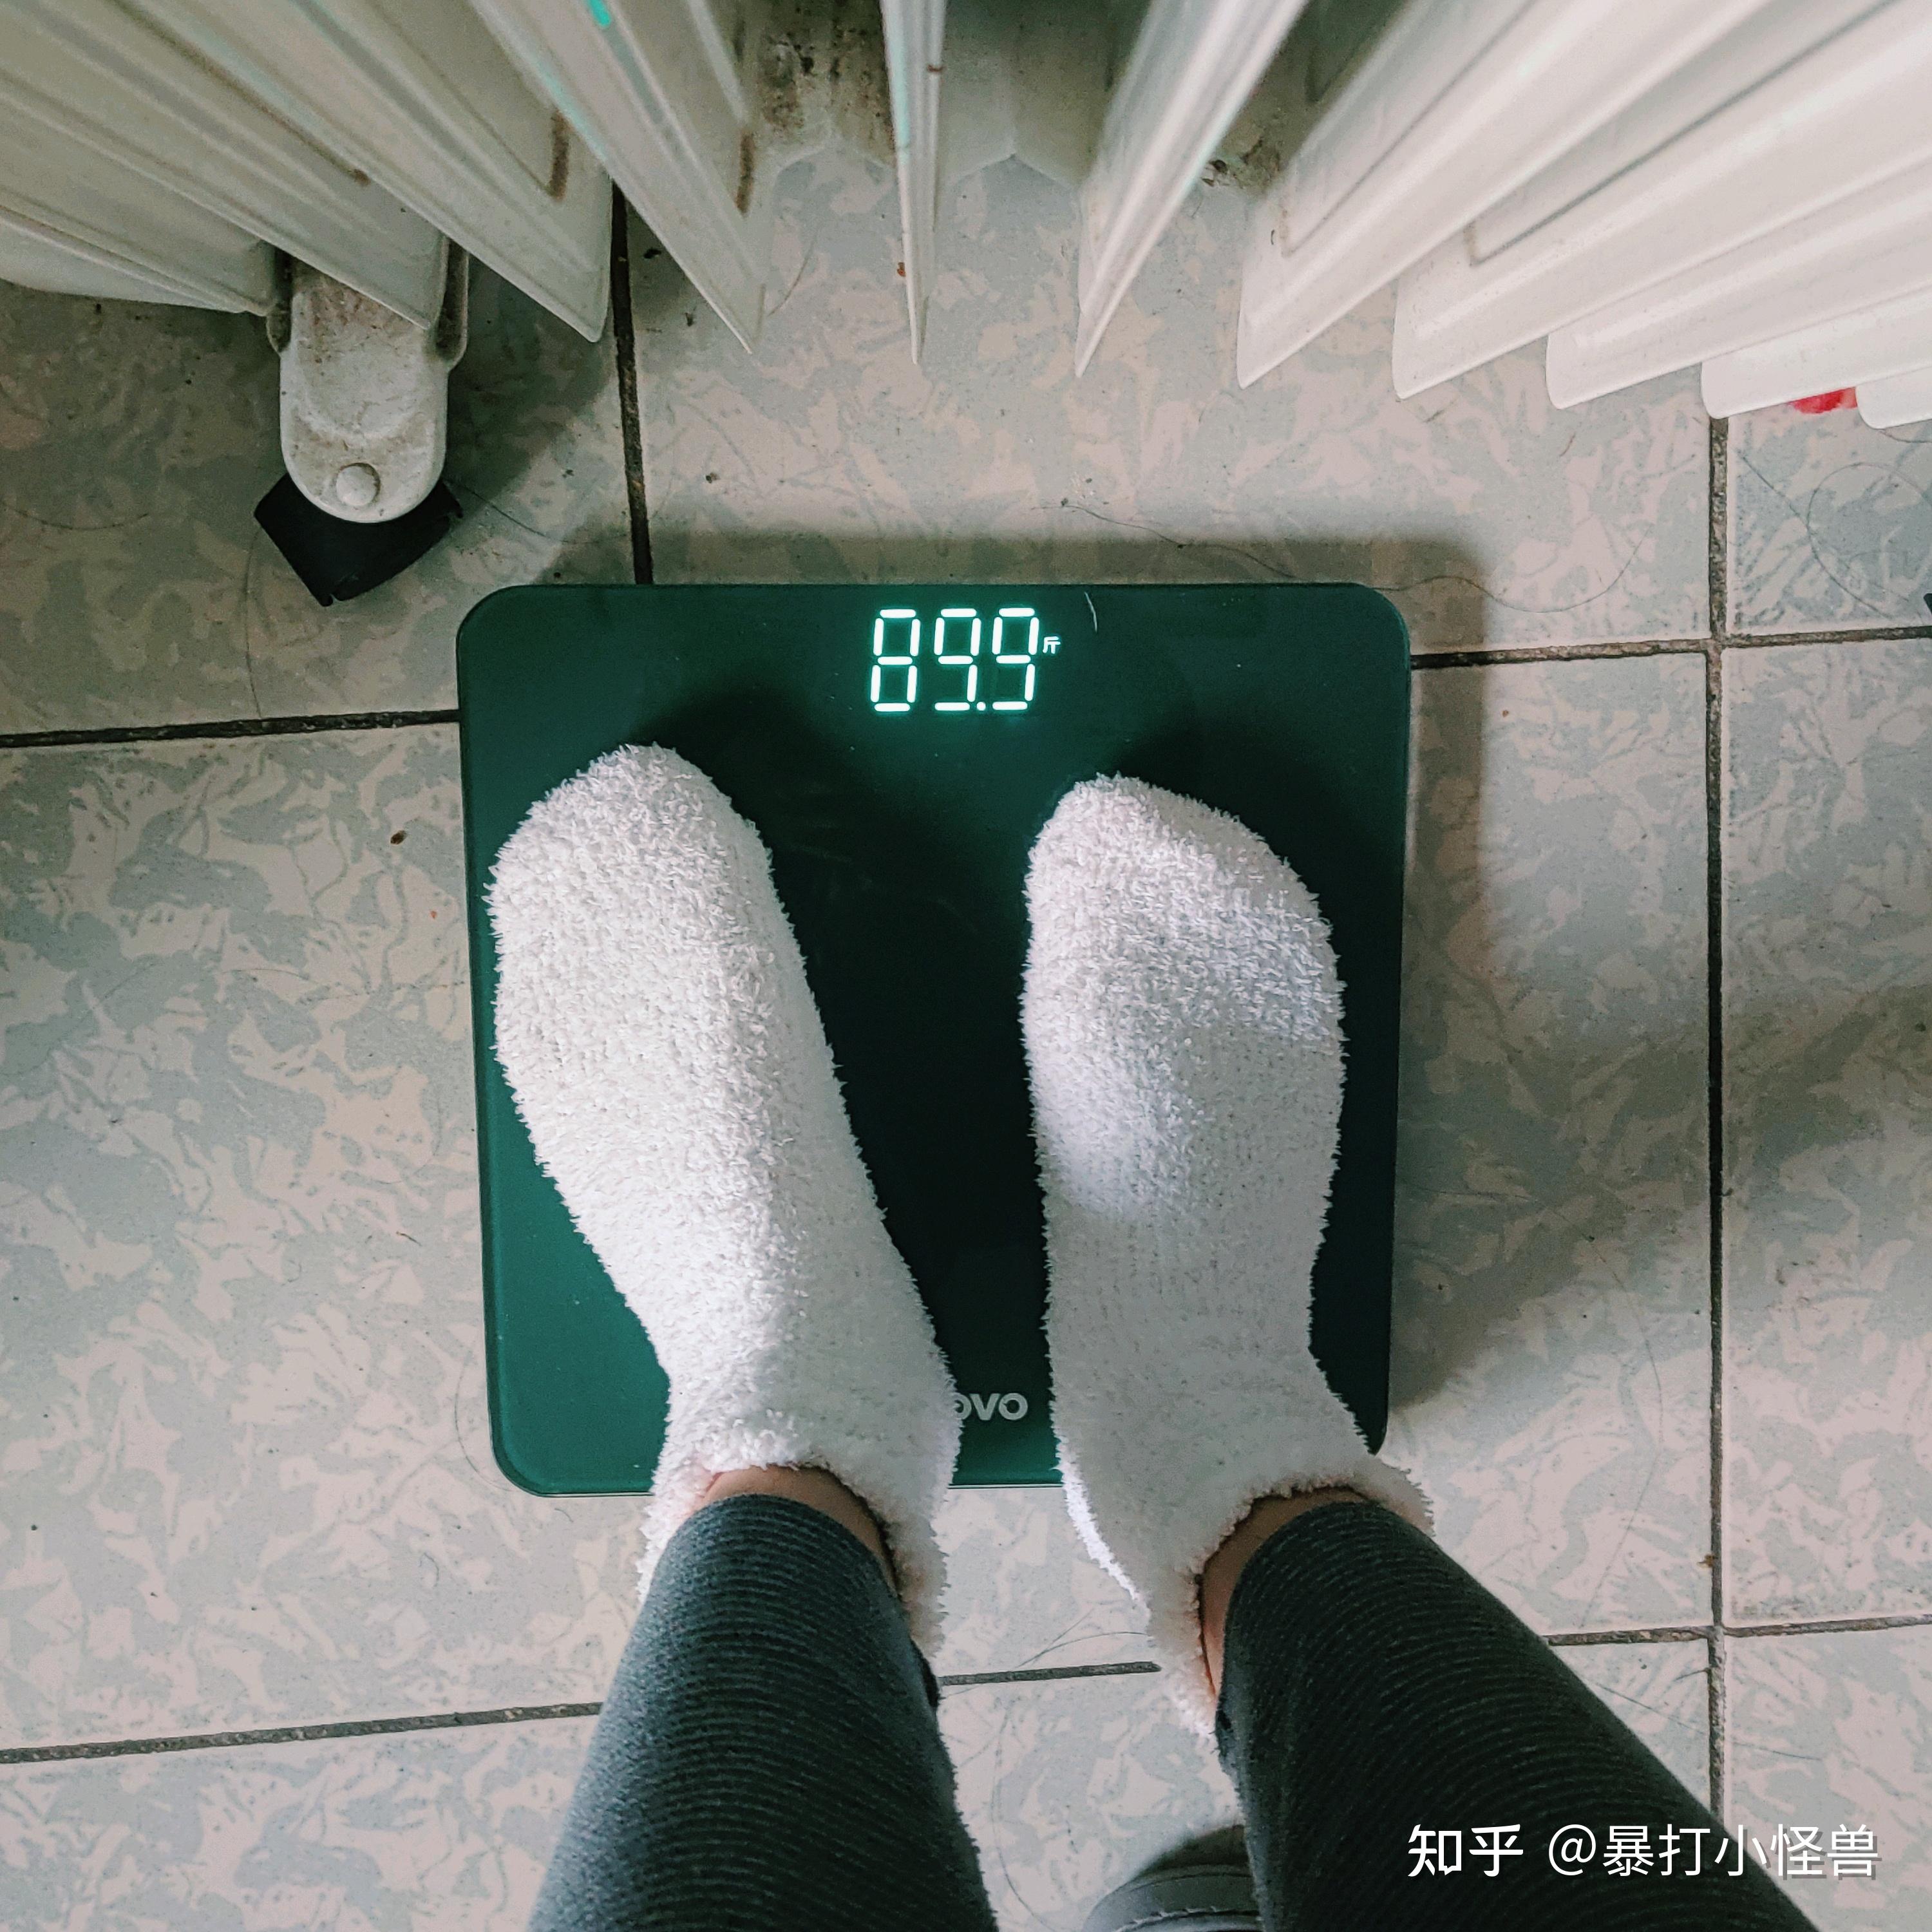 女生体重90斤是种怎样的体验? 